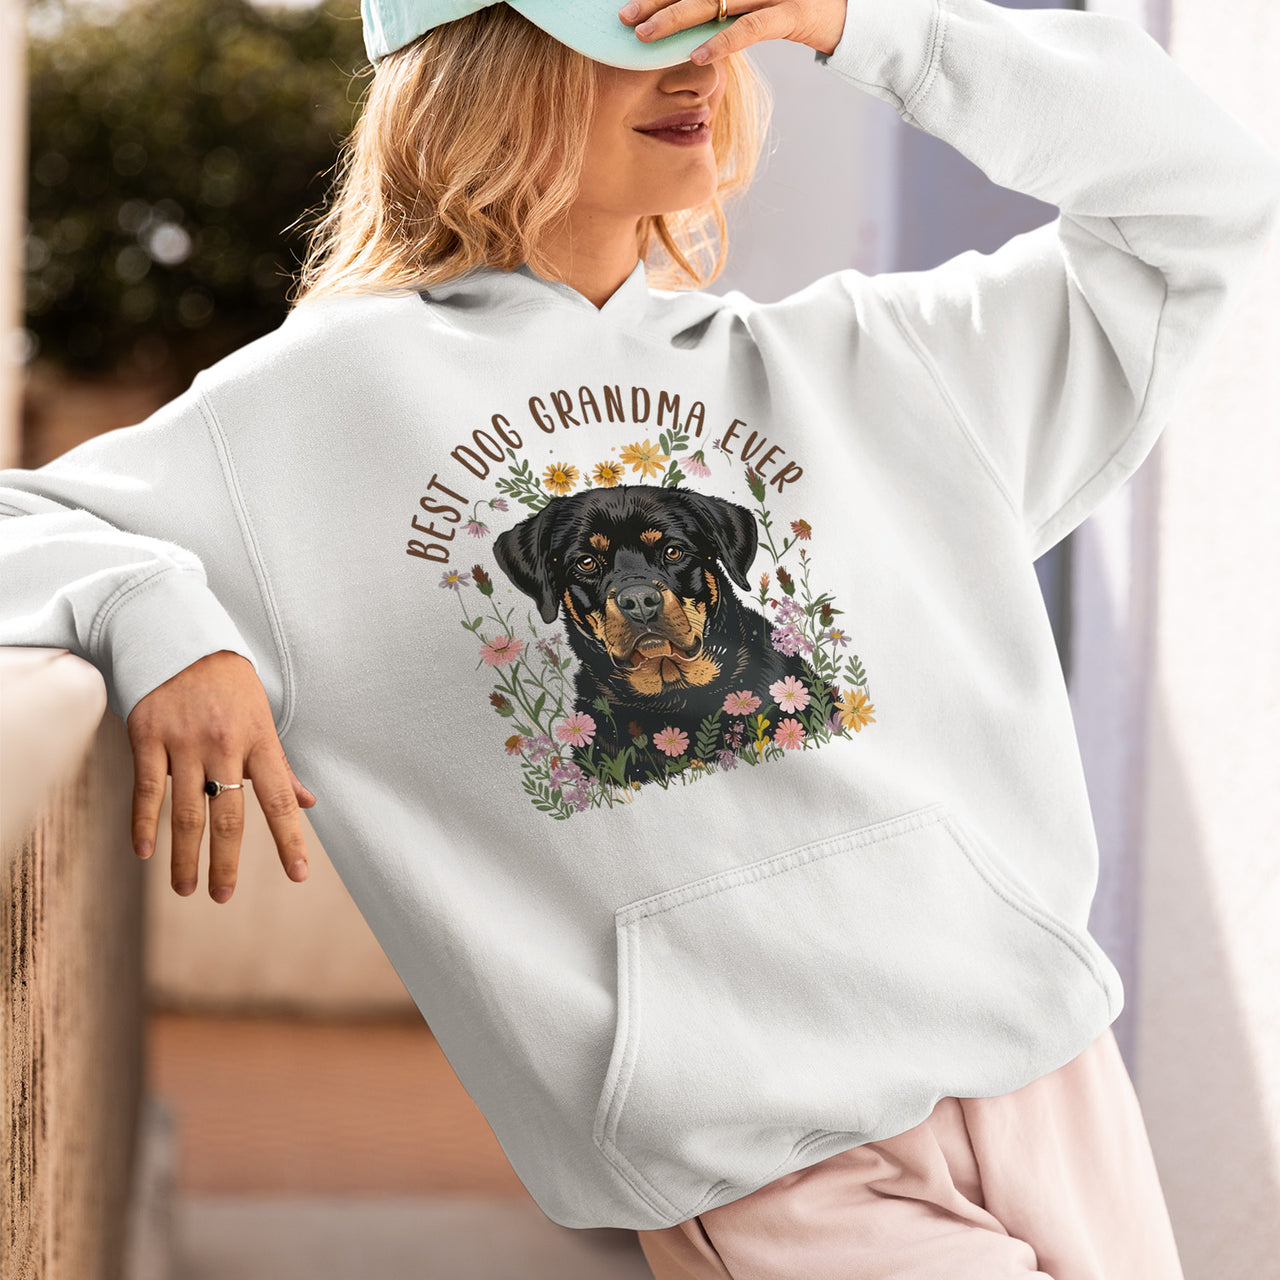 Rottweiler Dog T-shirt, Pet Lover Shirt, Dog Lover Shirt, Best Dog Grandma Ever T-Shirt, Dog Owner Shirt, Gift For Dog Grandma, Funny Dog Shirts, Women Dog T-Shirt, Mother's Day Gift, Dog Lover Wife Gifts, Dog Shirt